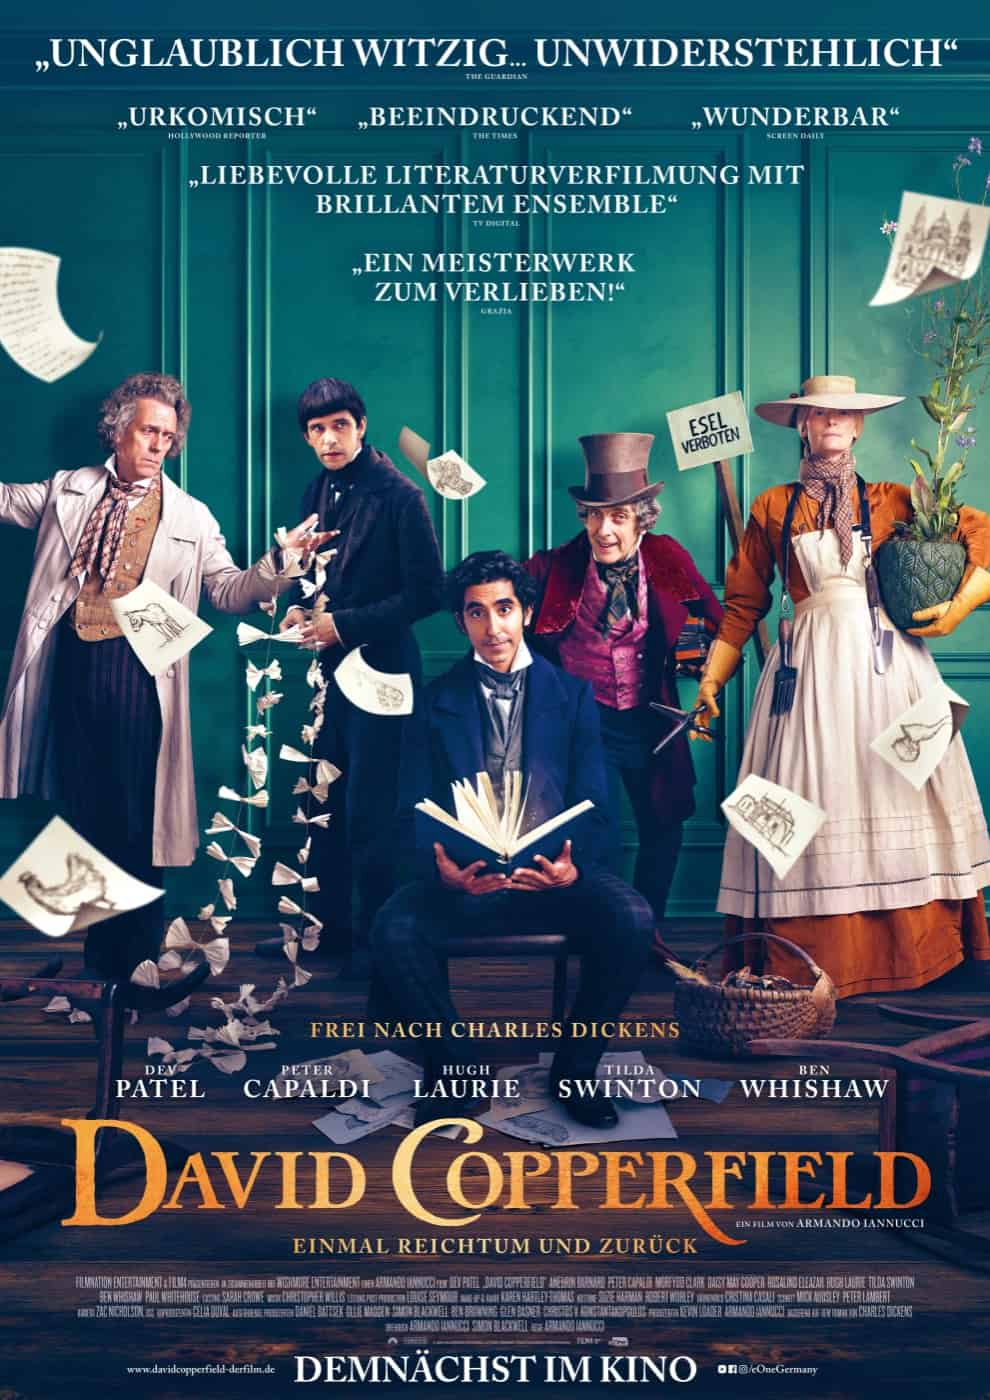 Hauptplakat zum kommenden Film David Copperfield mit Dev Patel und Hugh Laurie